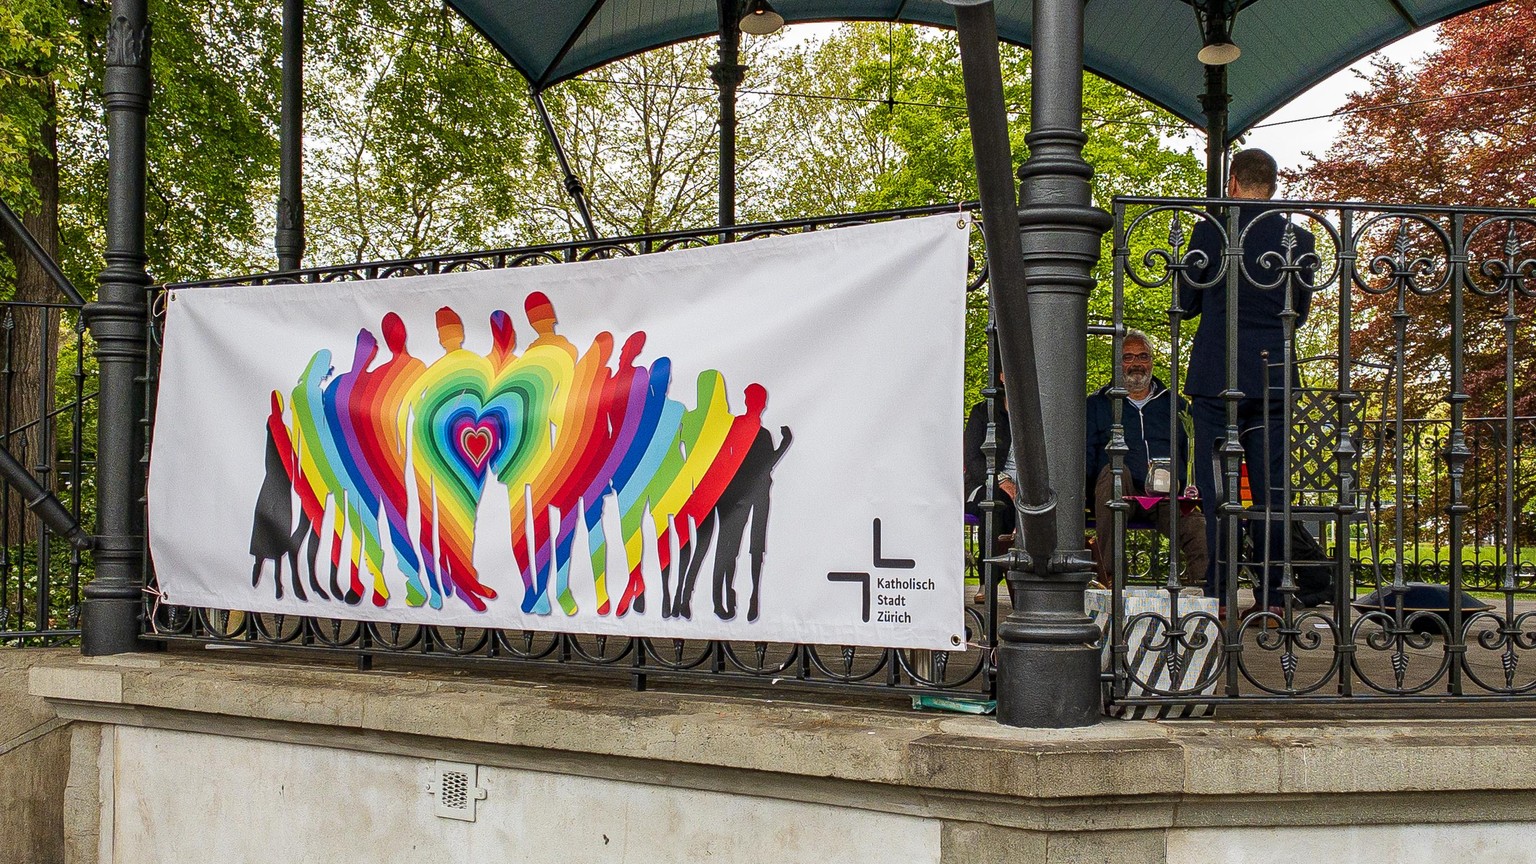 Katholische Kirche. Katholischer Seelsorger Meinrad Furrer segnet queere Paare auf dem Platzspitz.